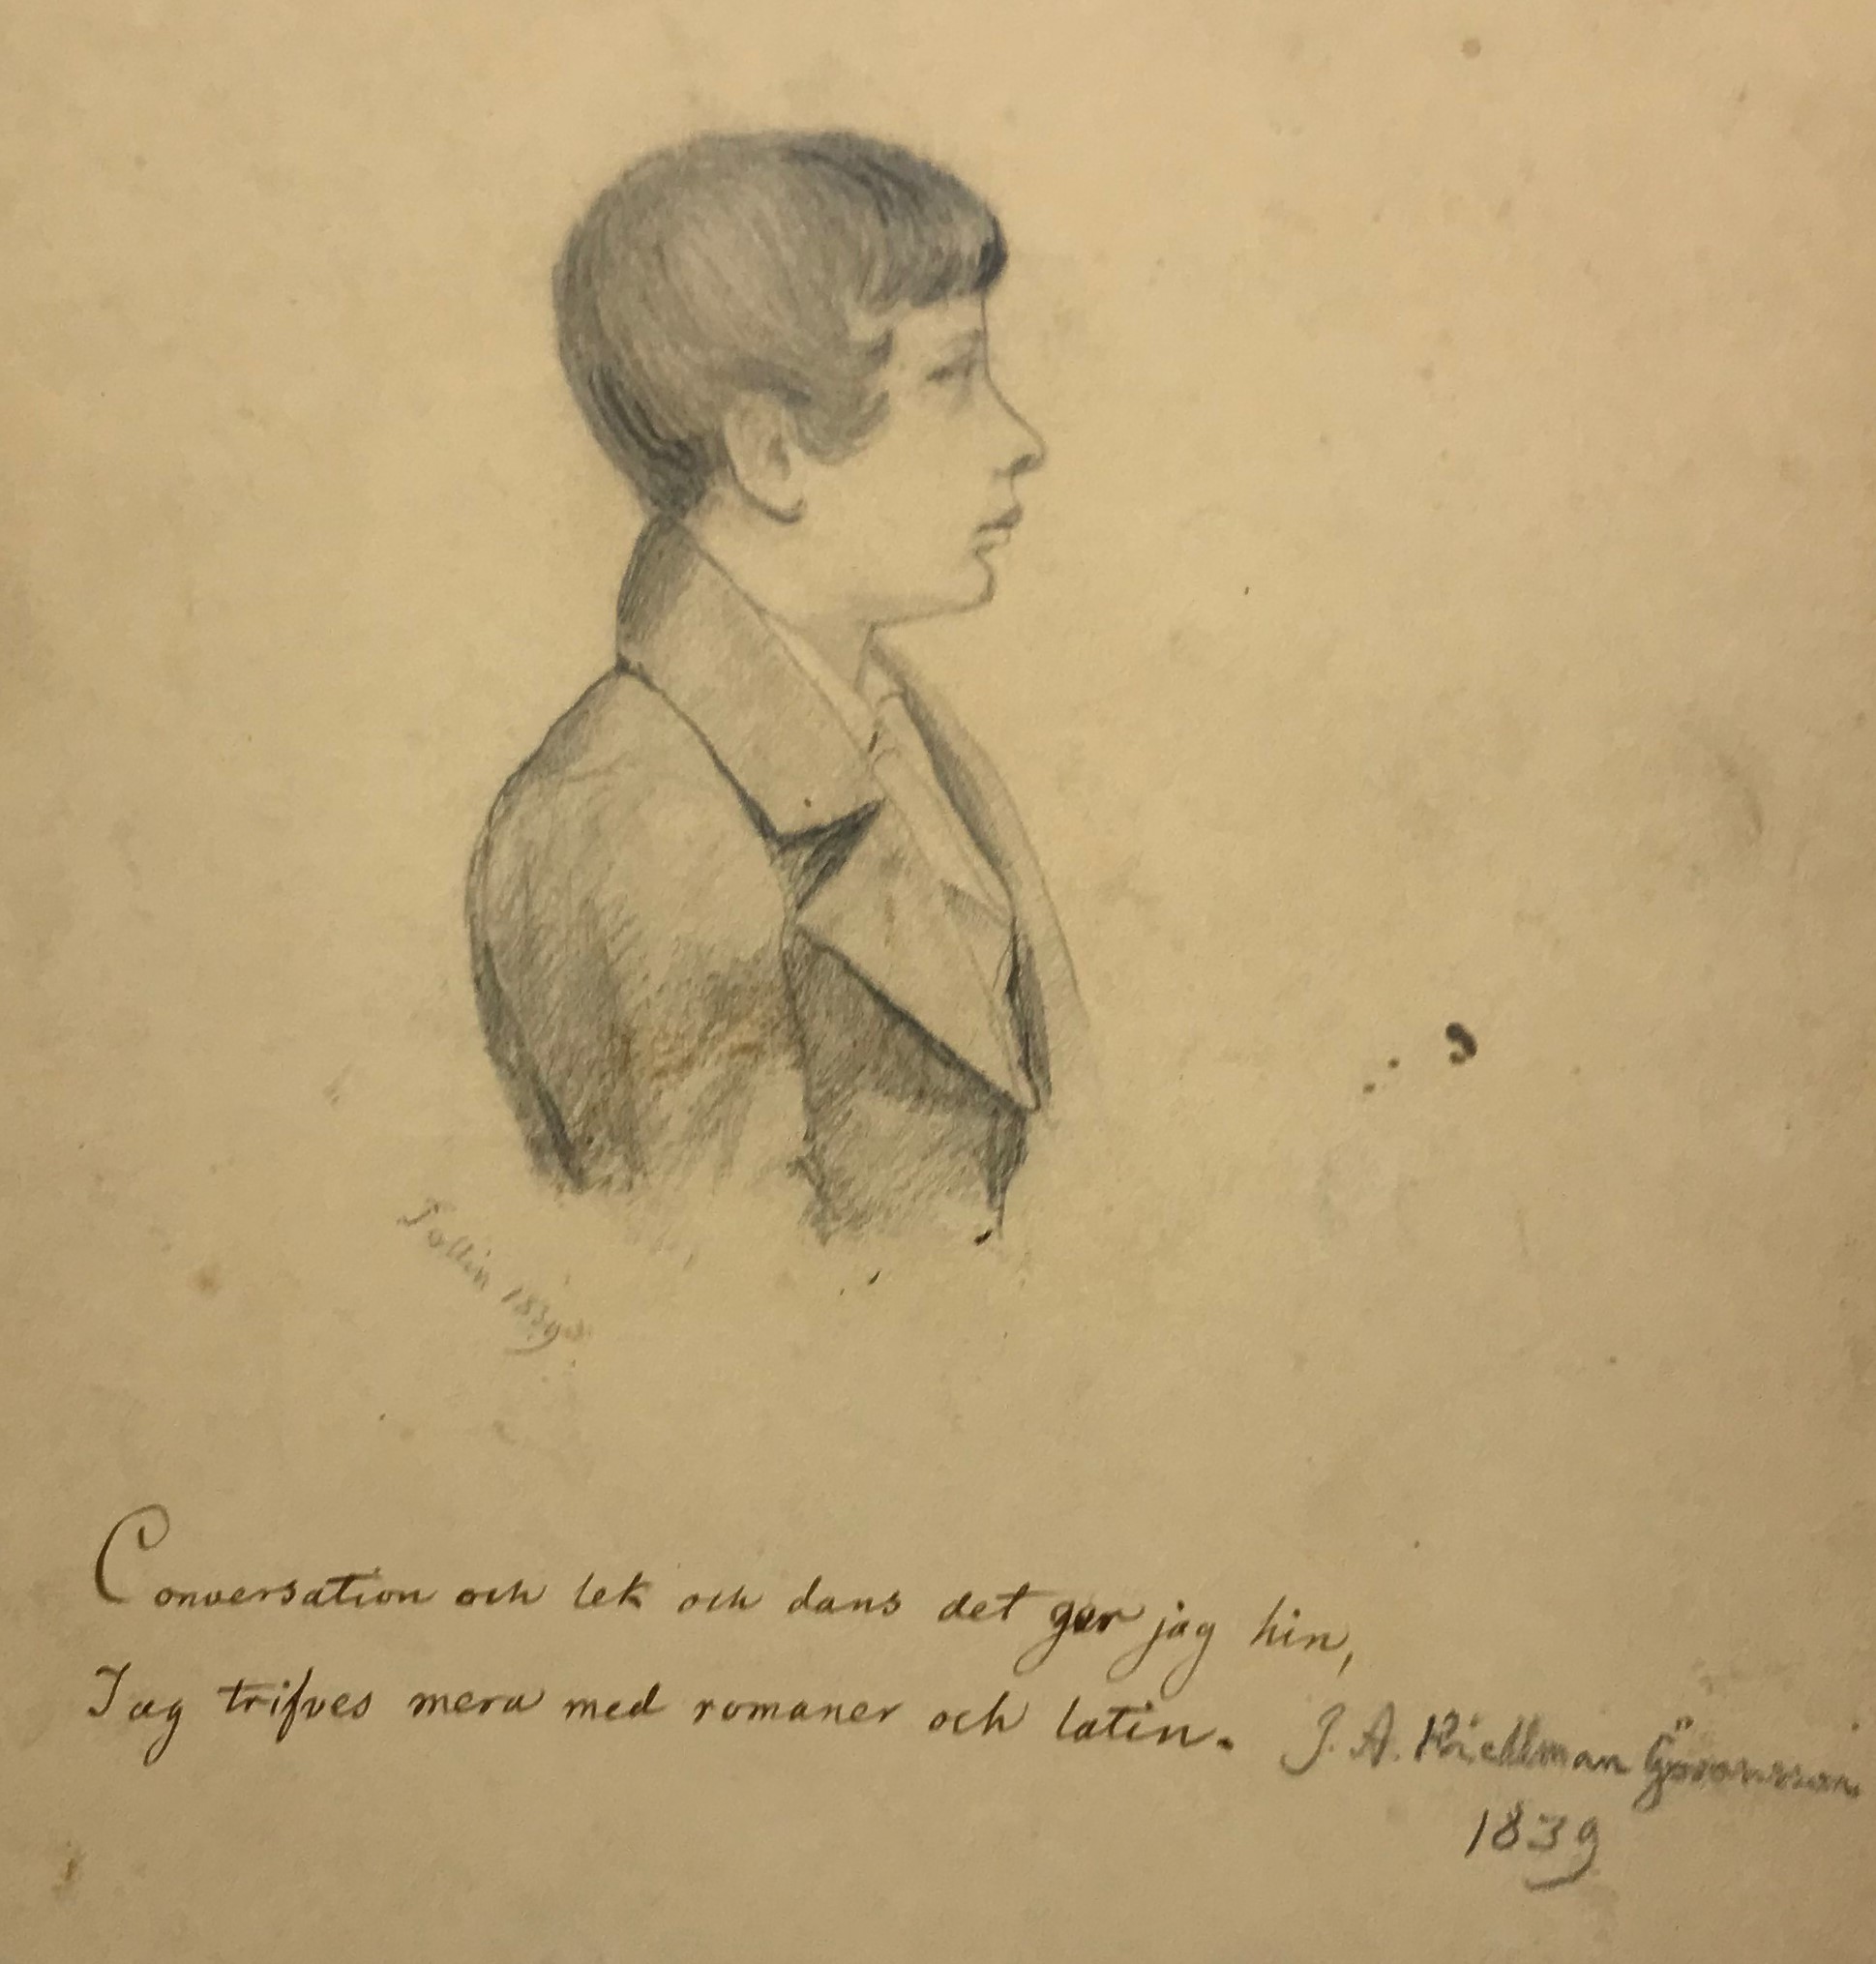 Svartvit teckning av en ung pojke med välkammat hår avbildad i profil. Under bilden texten "Conversation och lek och dans det ger jag hin, Jag trifves mera med romaner och latin."